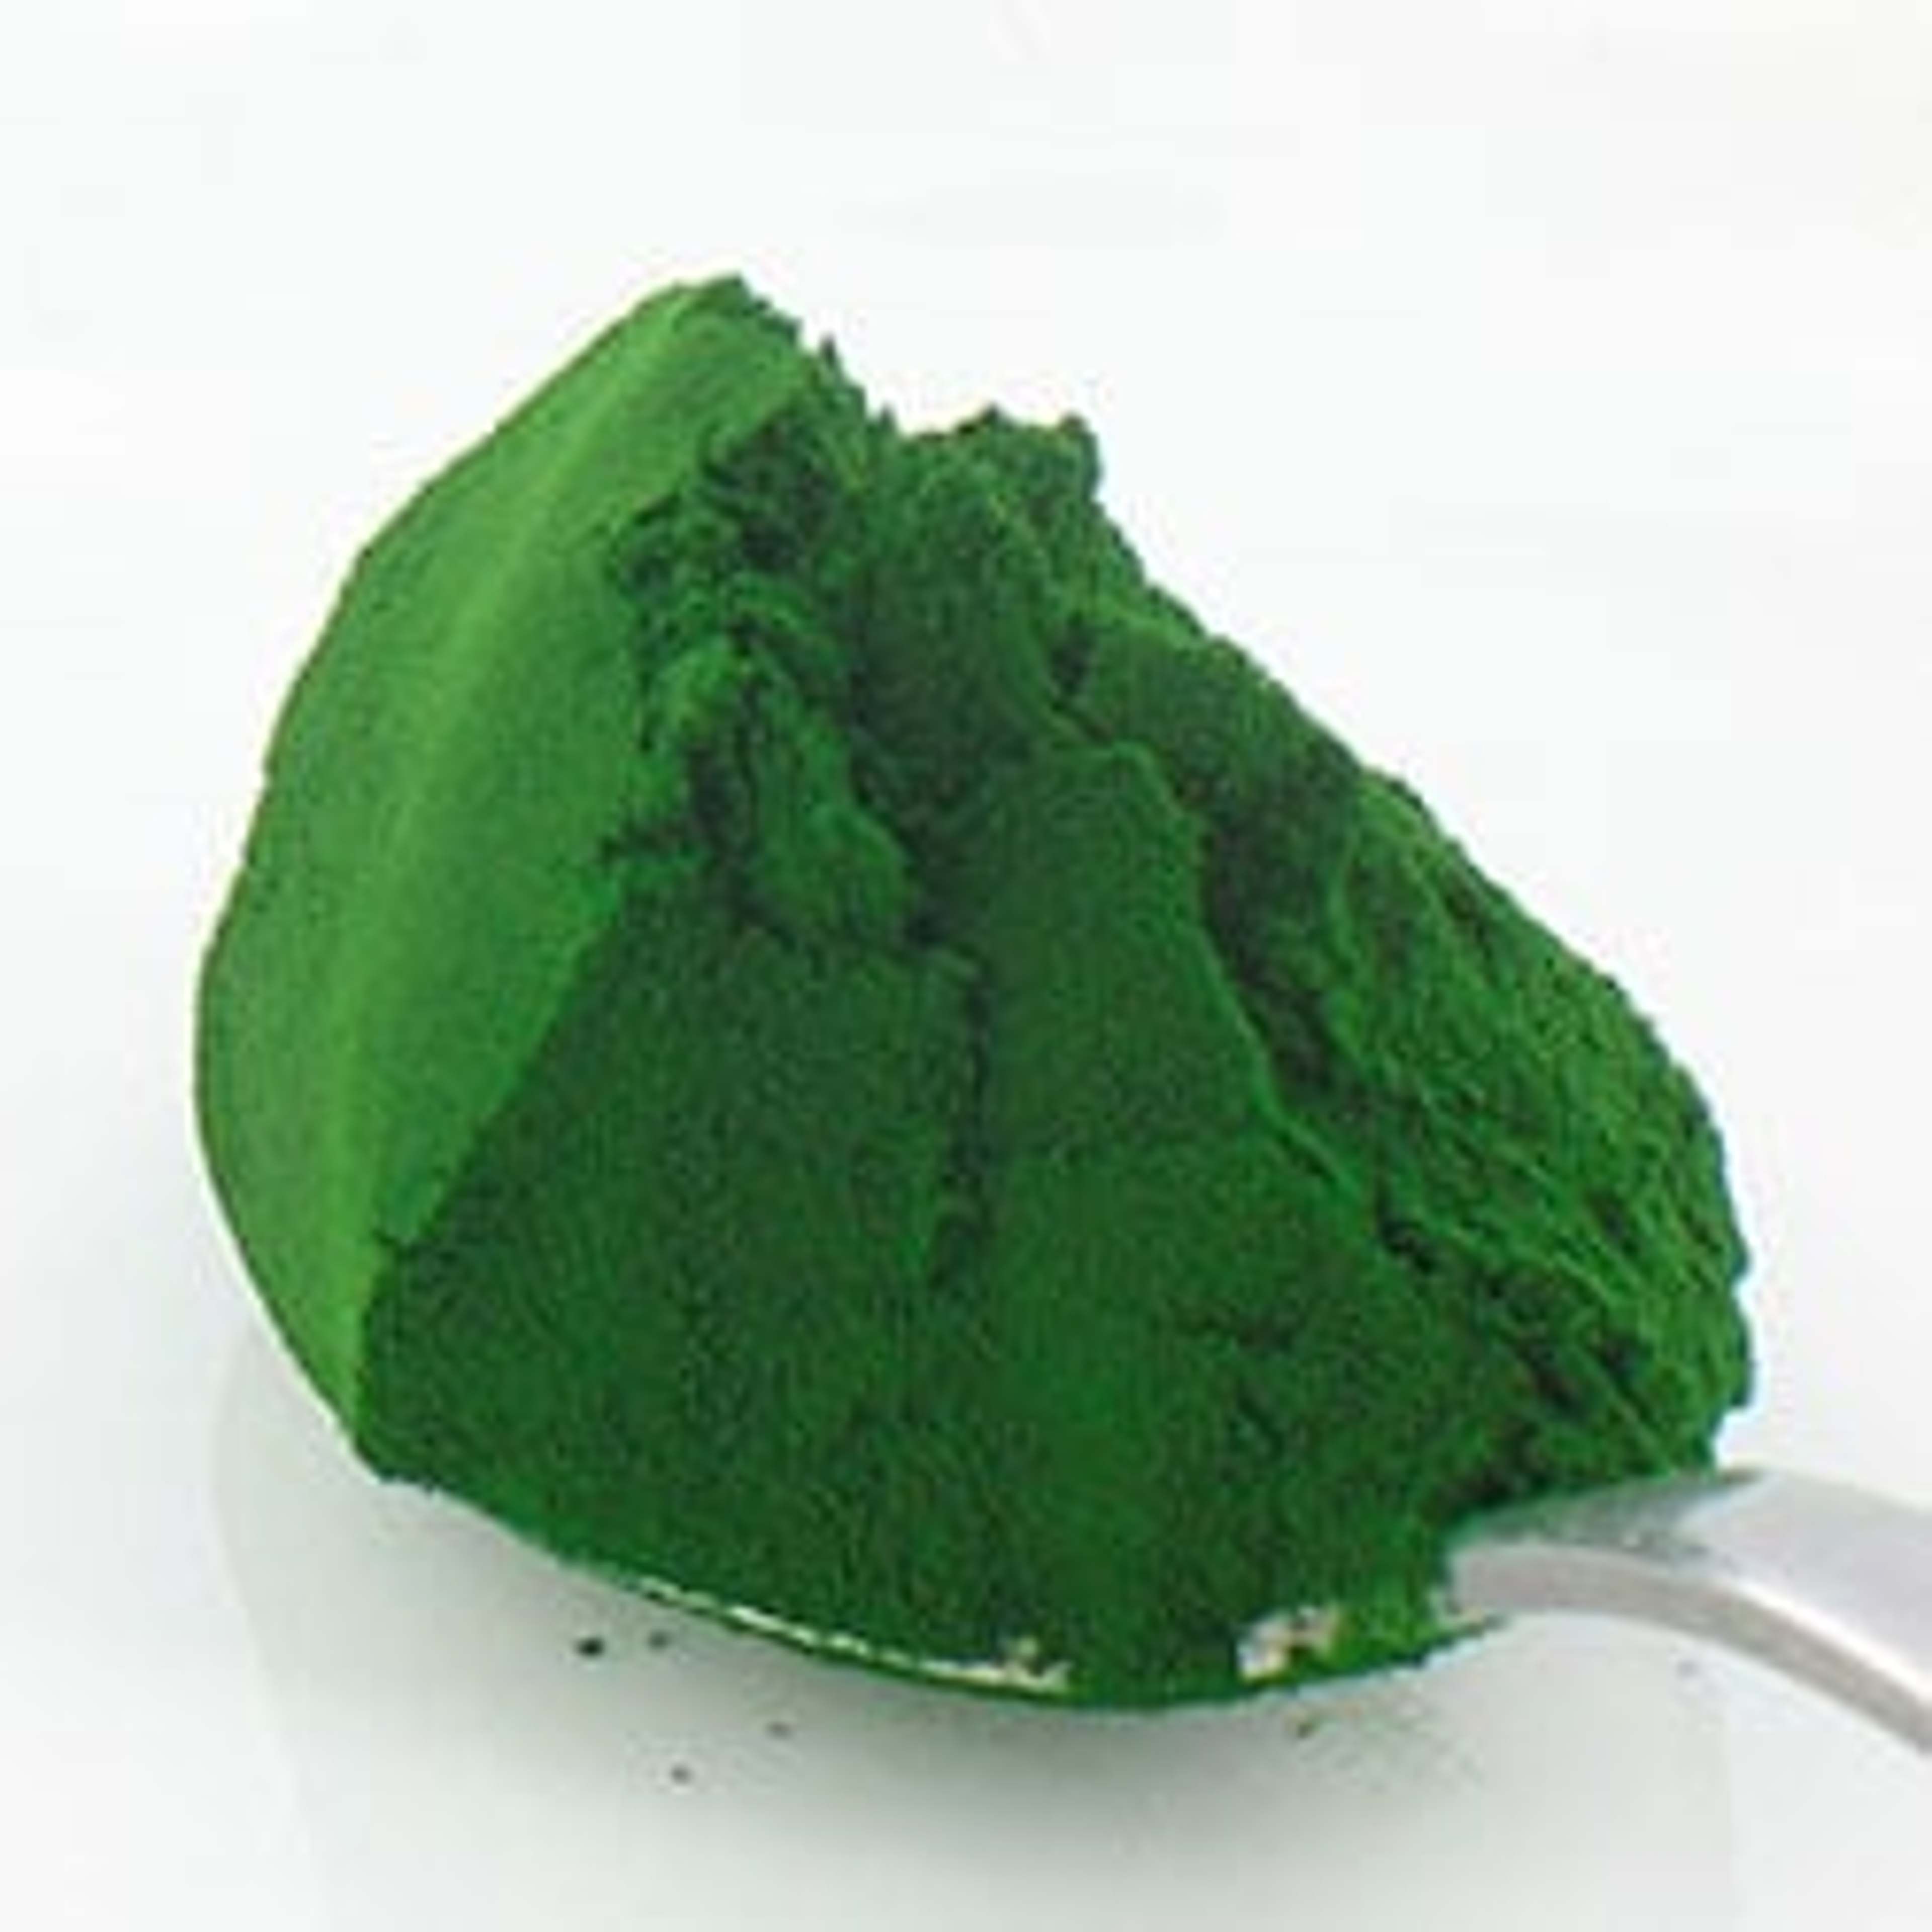 La chlorelle fournit de la chlorophylle ainsi que des minéraux précieux, plus du sélénium, du zinc et des acides aminés.